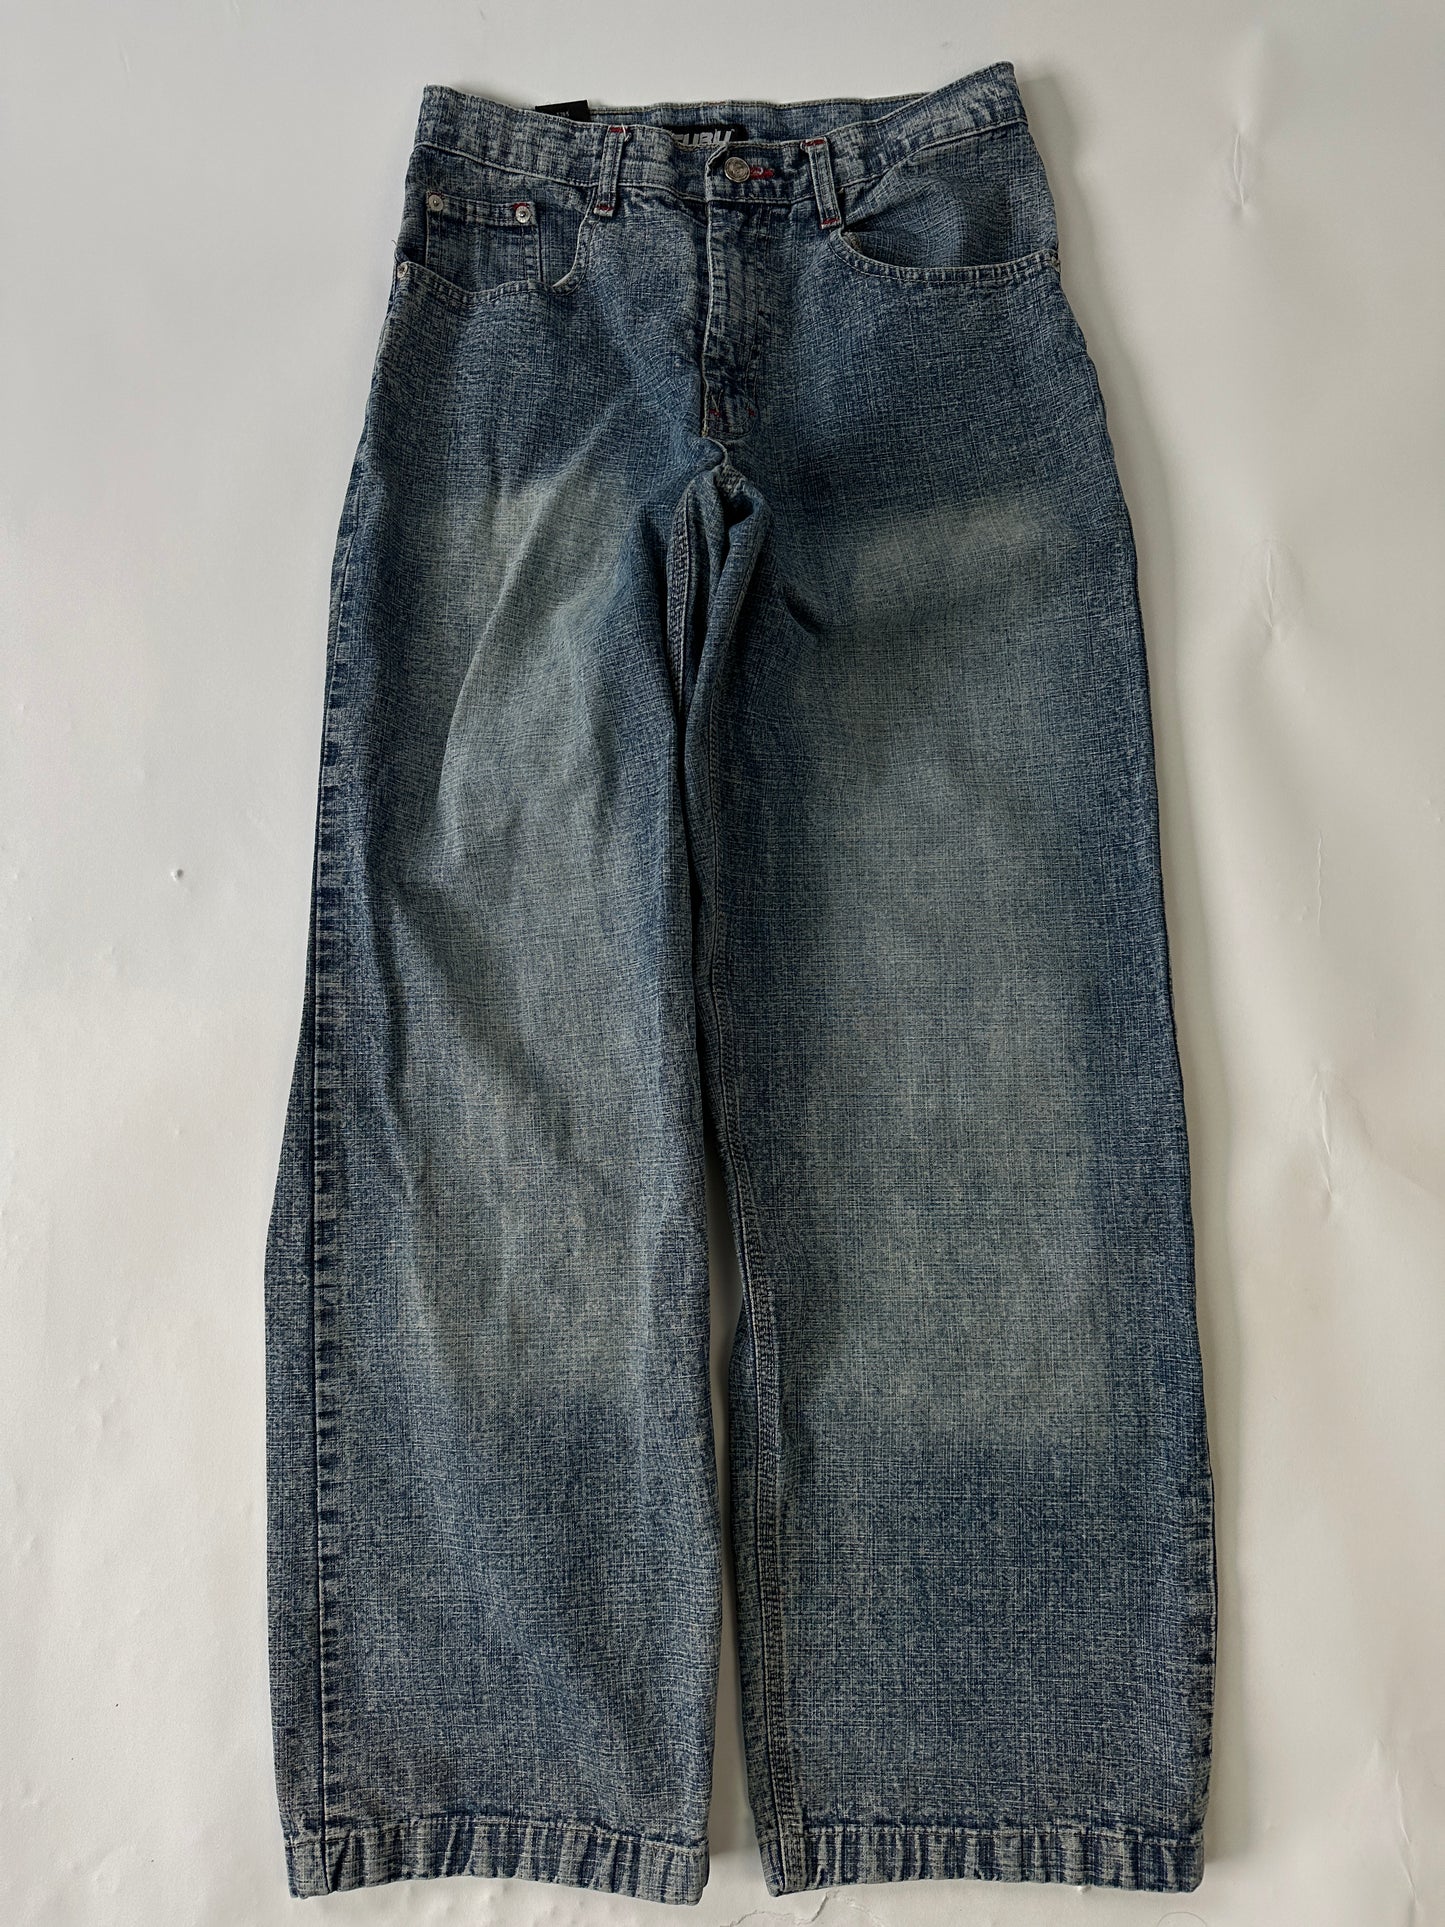 Fubu Vintage Carpenter Jeans - 30